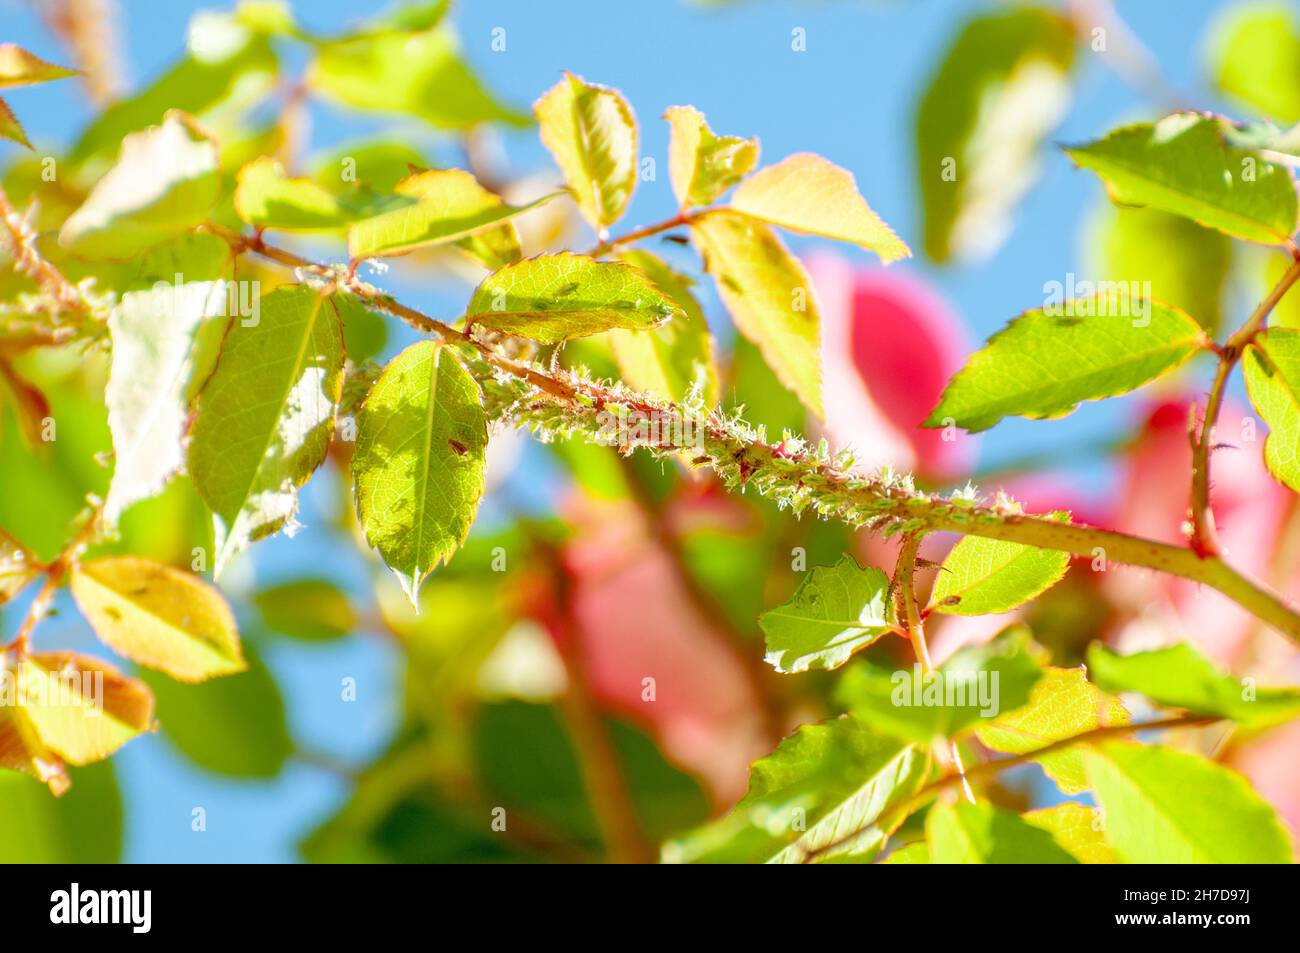 Un clúster de áfidos Macrosiphon Rose (Rosa Rosae) en un tallo. Planta conocida como piojos, los áfidos son alimentadores de plantas especializadas que chupan la savia de la planta ve Foto de stock